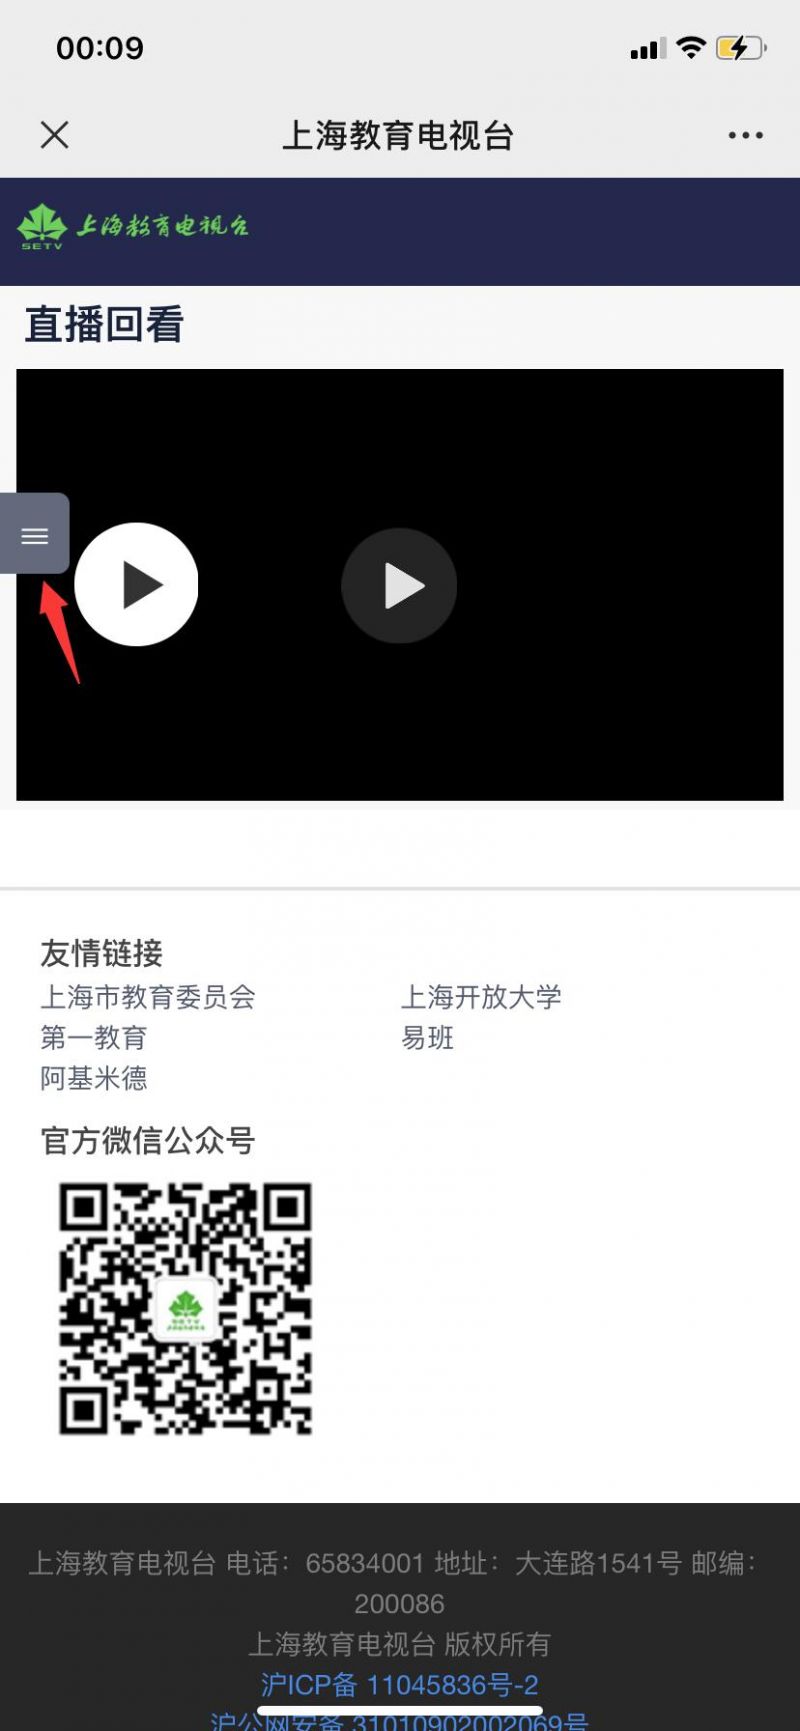 上海教育电视台开学第一课直播视频观看方式(电脑+手机)